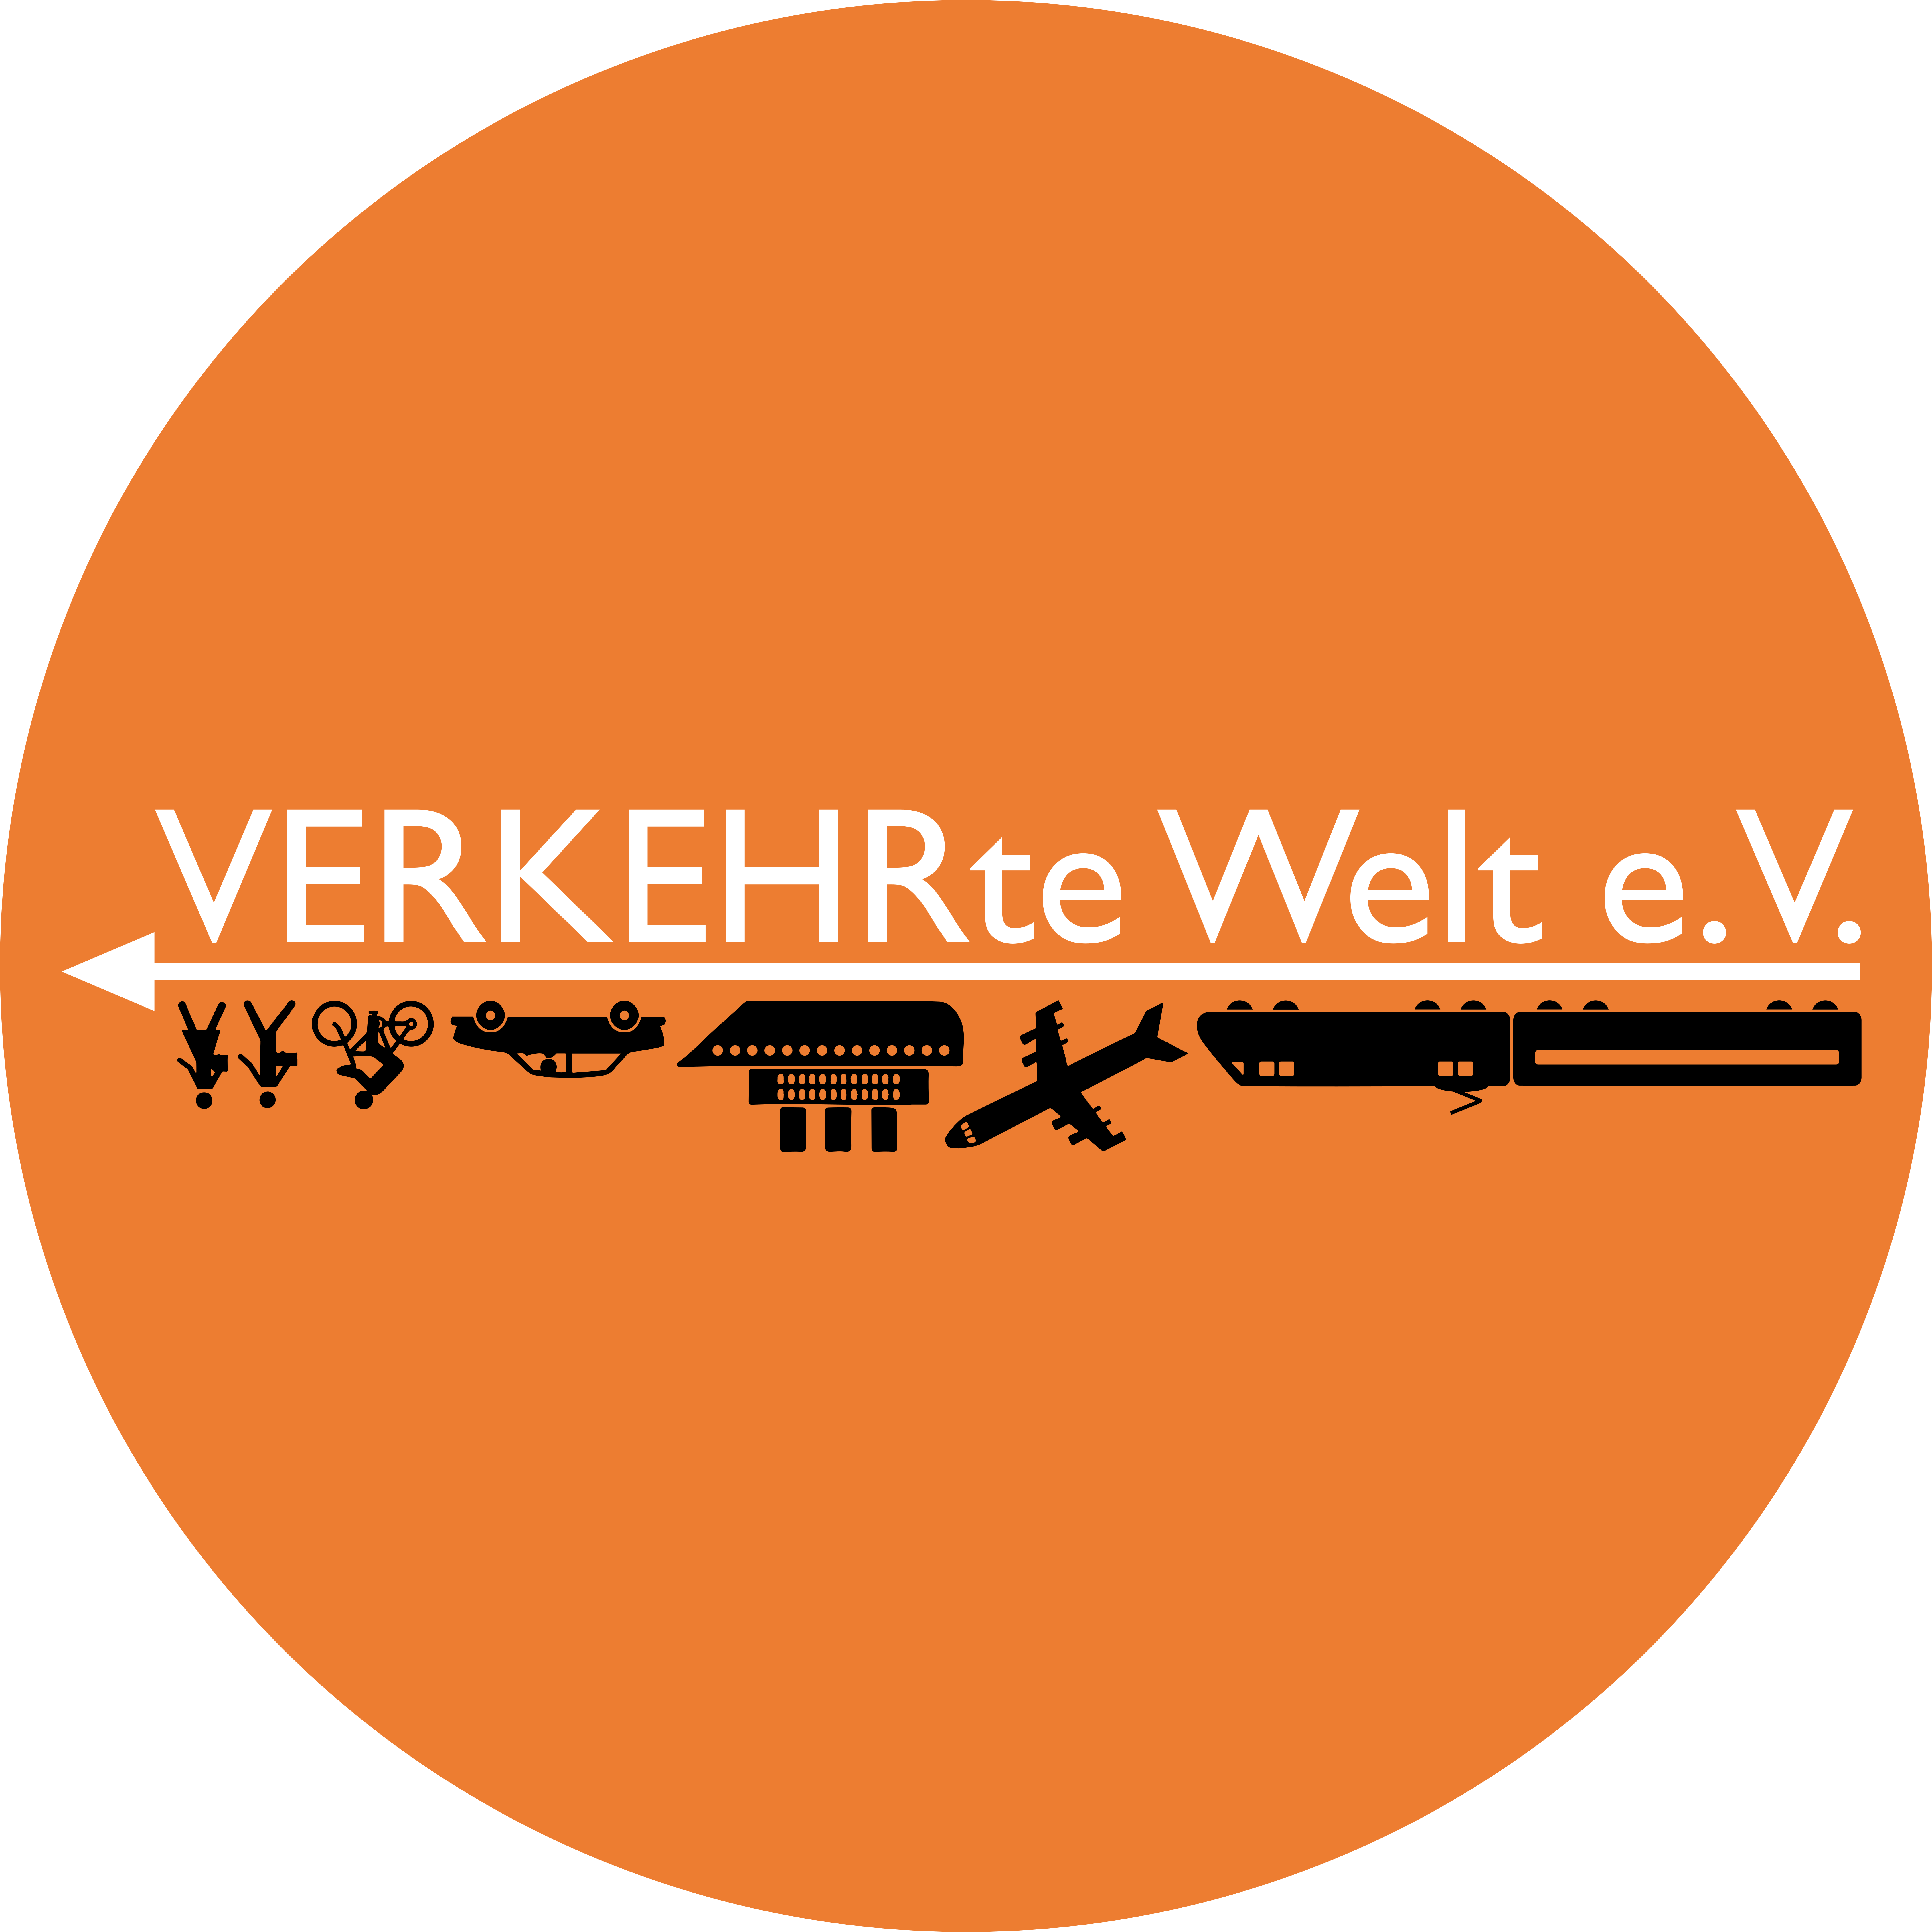 Excursion of the “Verkehrte Welt” to Stuttgart